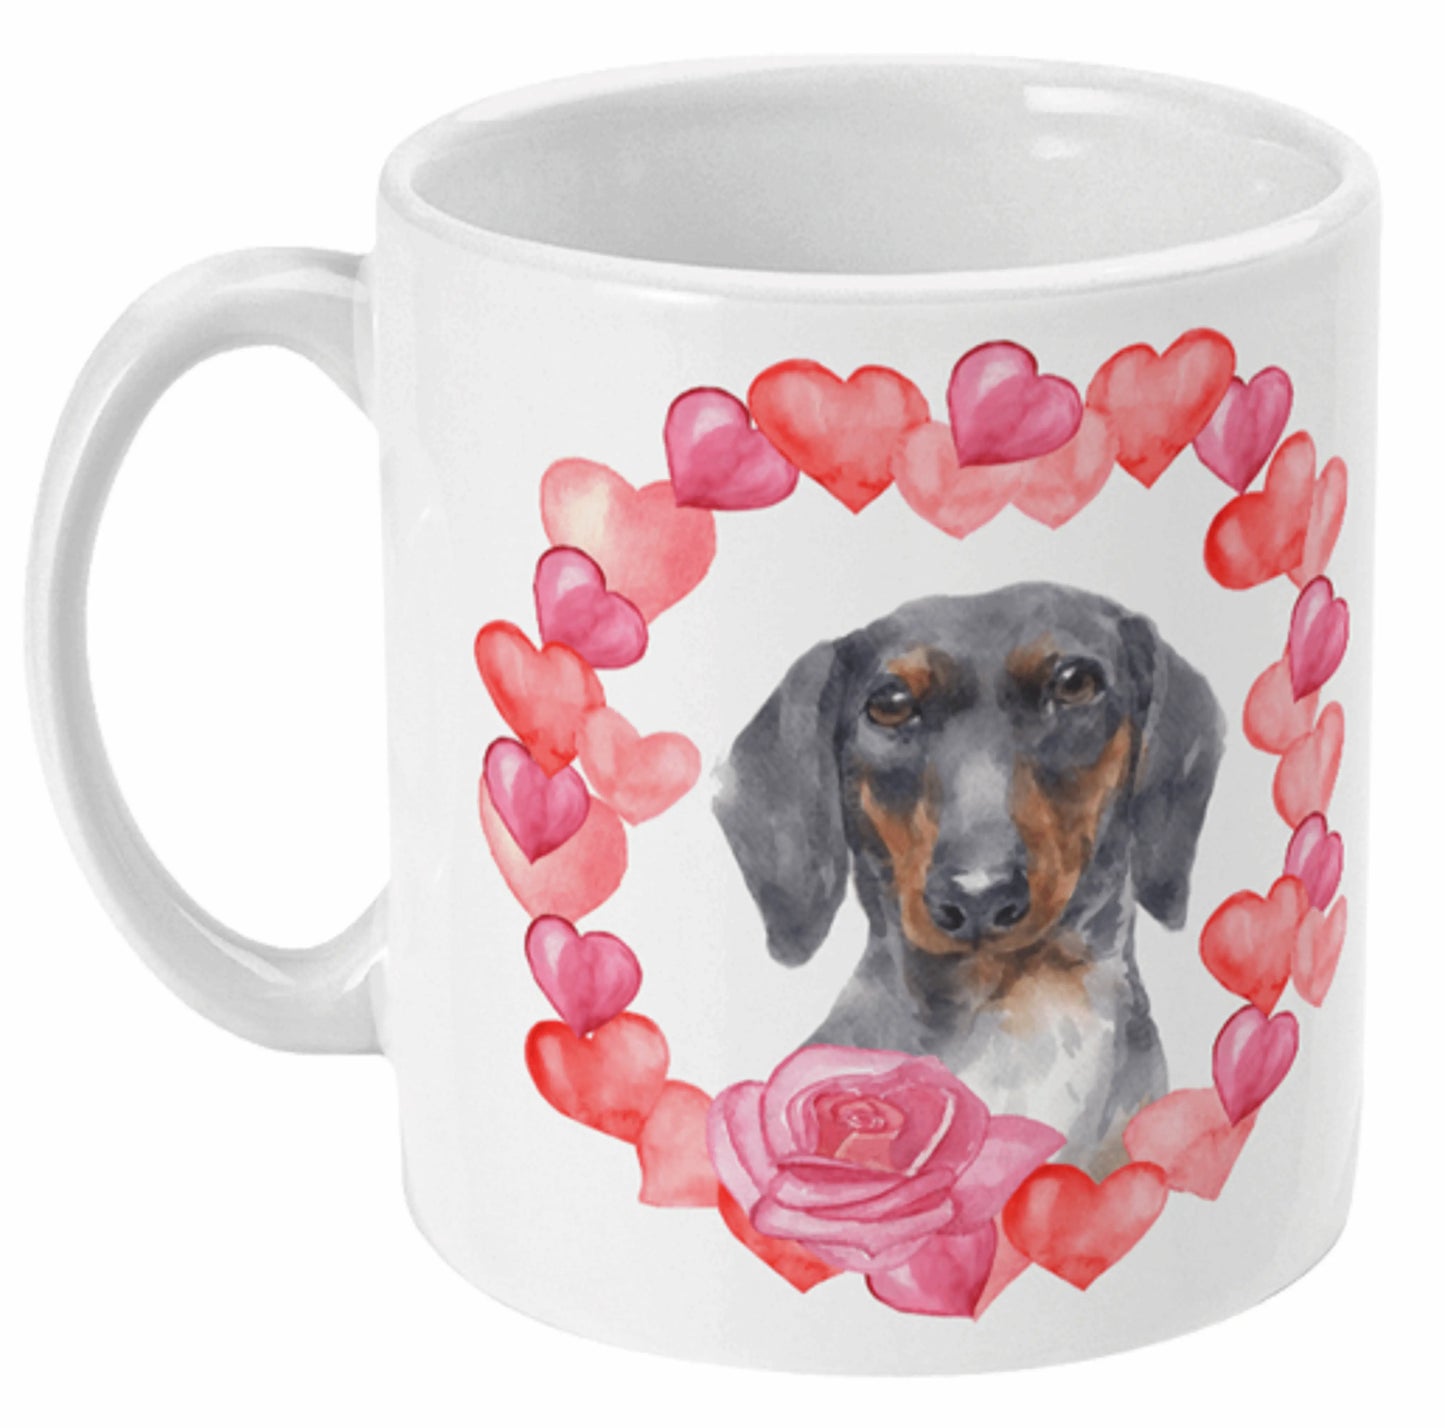  Beautiful Dachshund Dog Wreath Coffee Mug by Free Spirit Accessories sold by Free Spirit Accessories